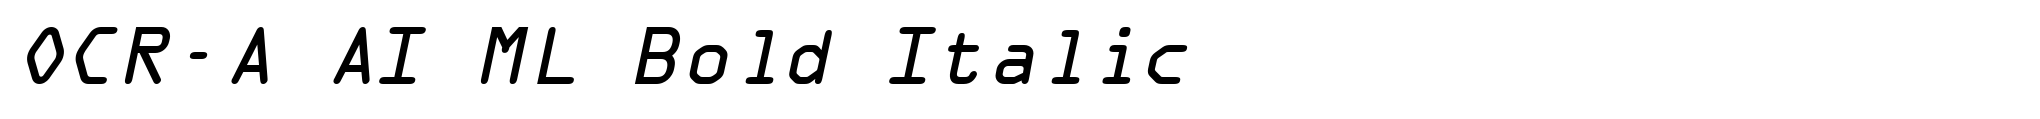 OCR-A AI ML Bold Italic image